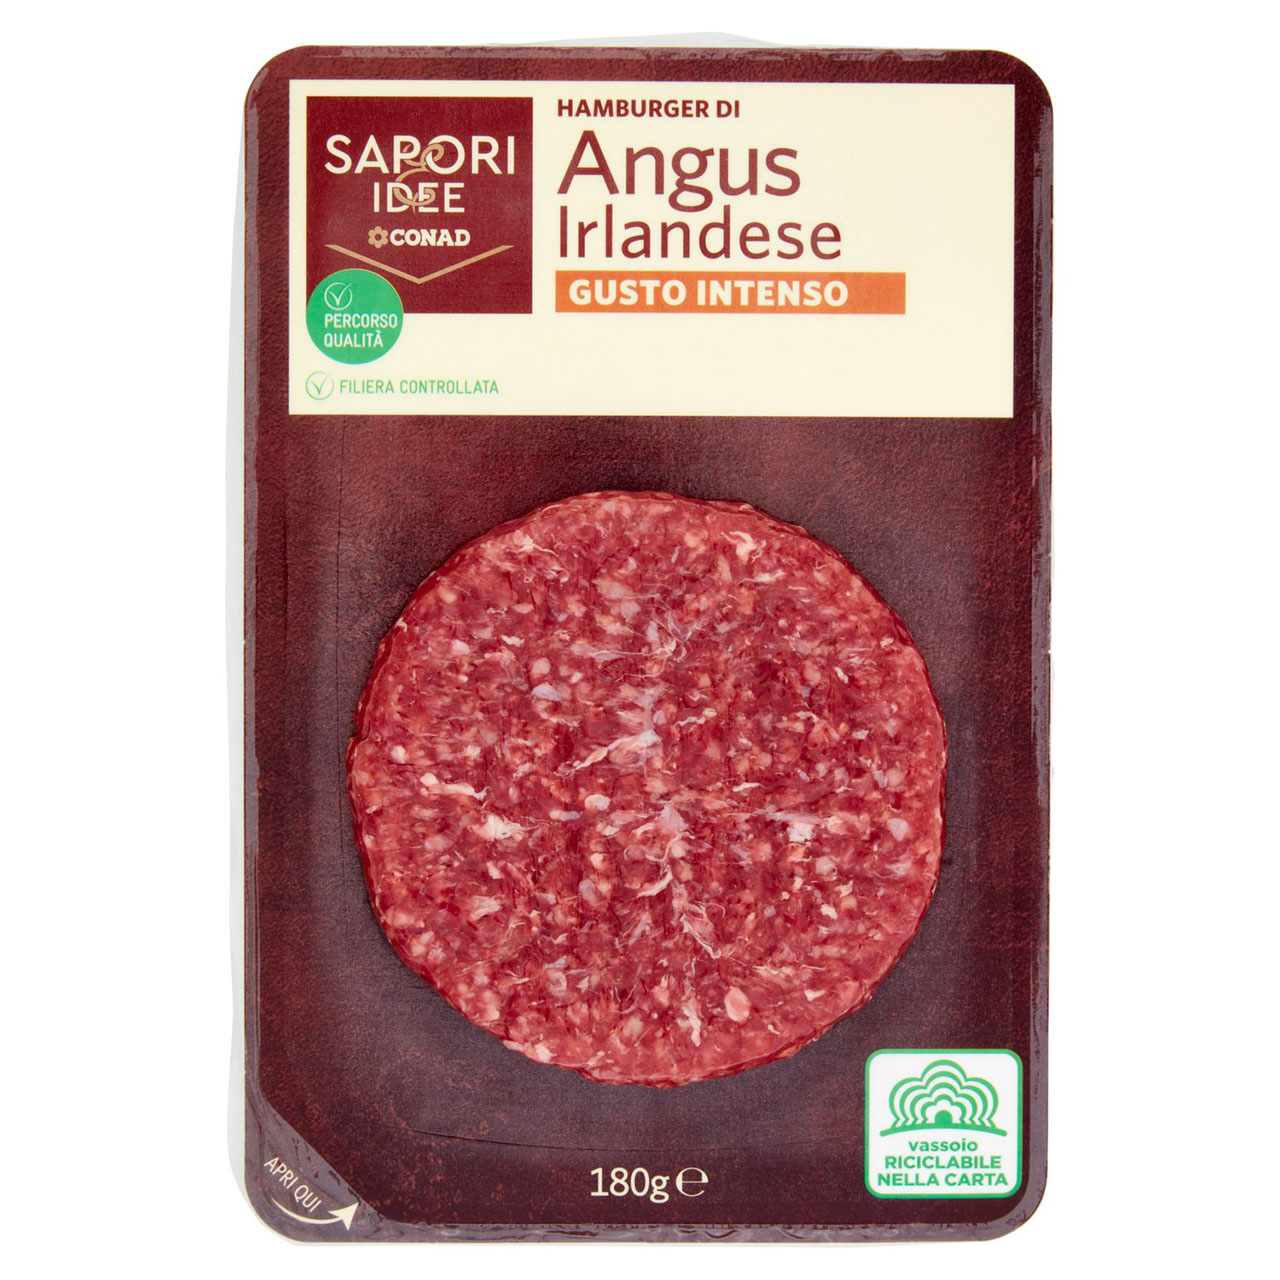 SAPORI & IDEE CONAD Percorso Qualità Hamburger di Angus Irlandese Gusto Intenso 180 g